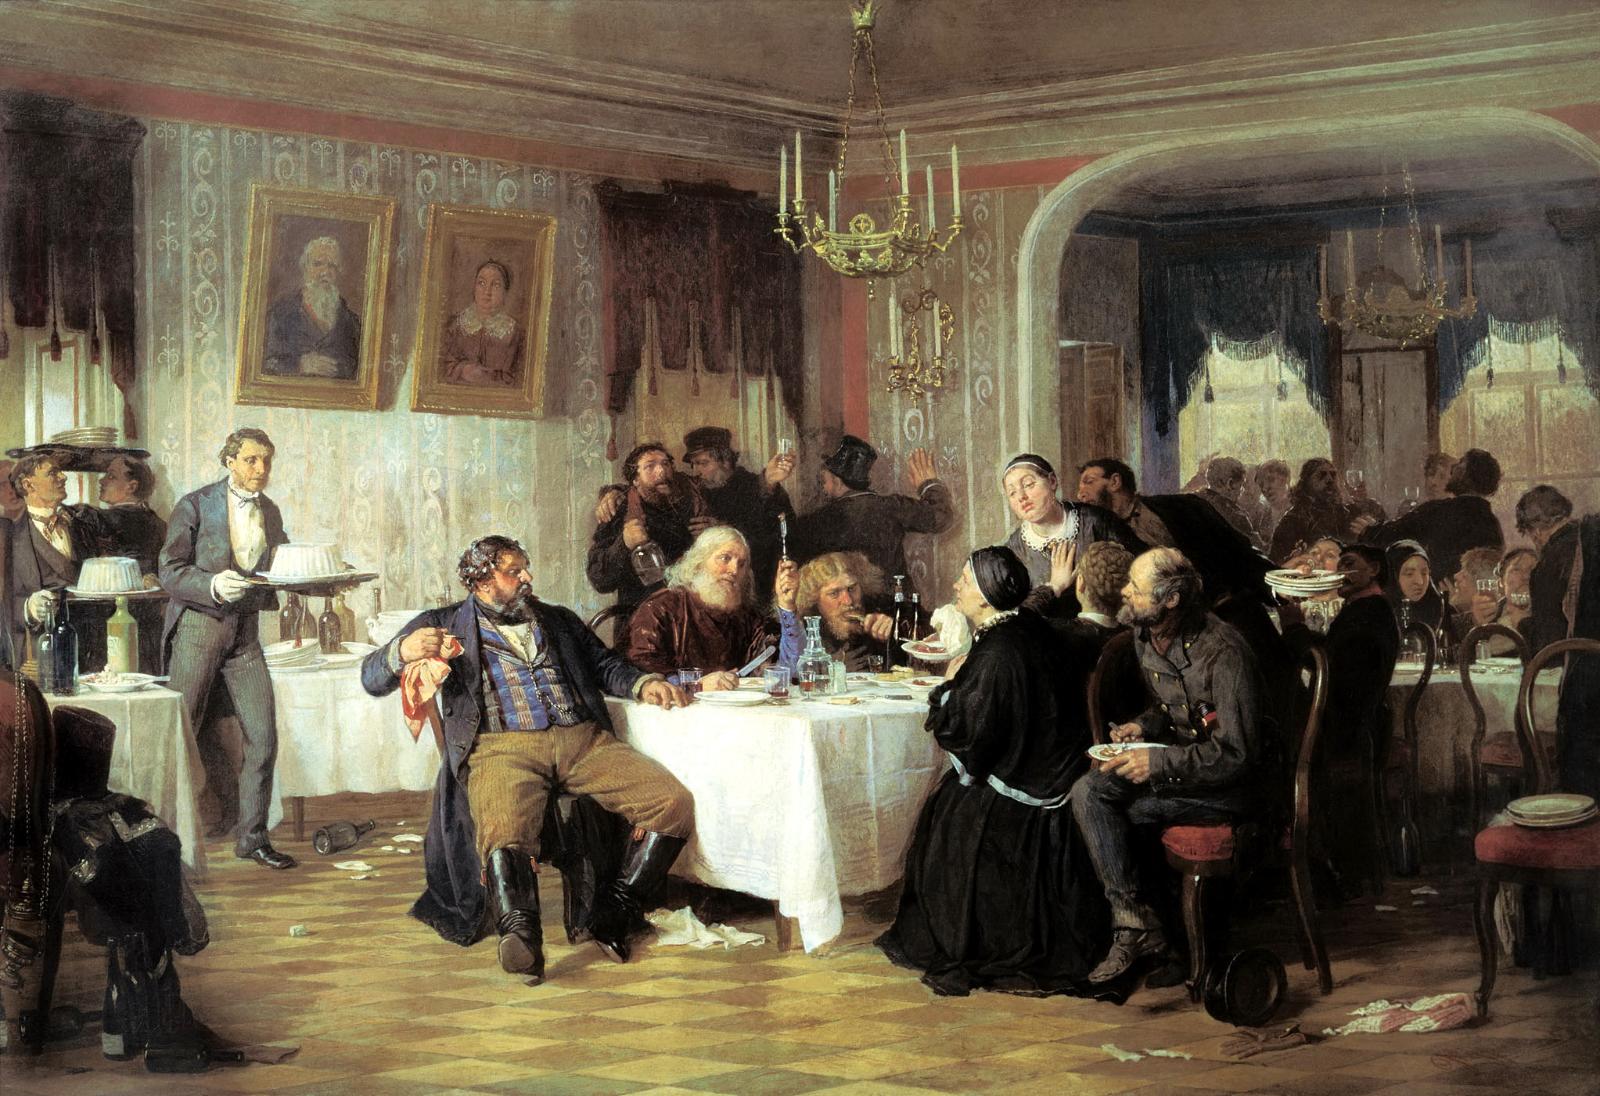 Купеческие поминки. Фирс Журавлёв, 1876 год.